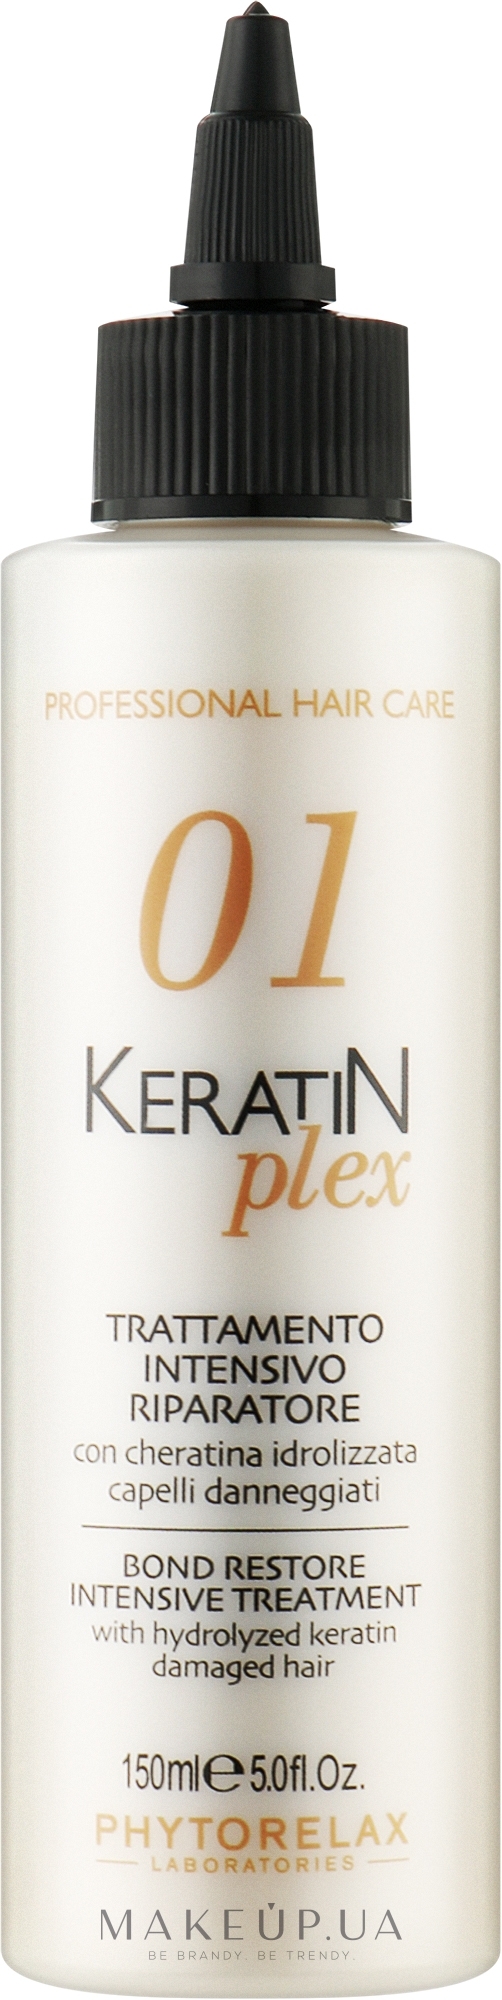 Засіб для інтенсивного відновлення з гідролізованим кератином - Phytorelax Laboratories Keratin Plex Bond Restore Intensive Treatment — фото 150ml